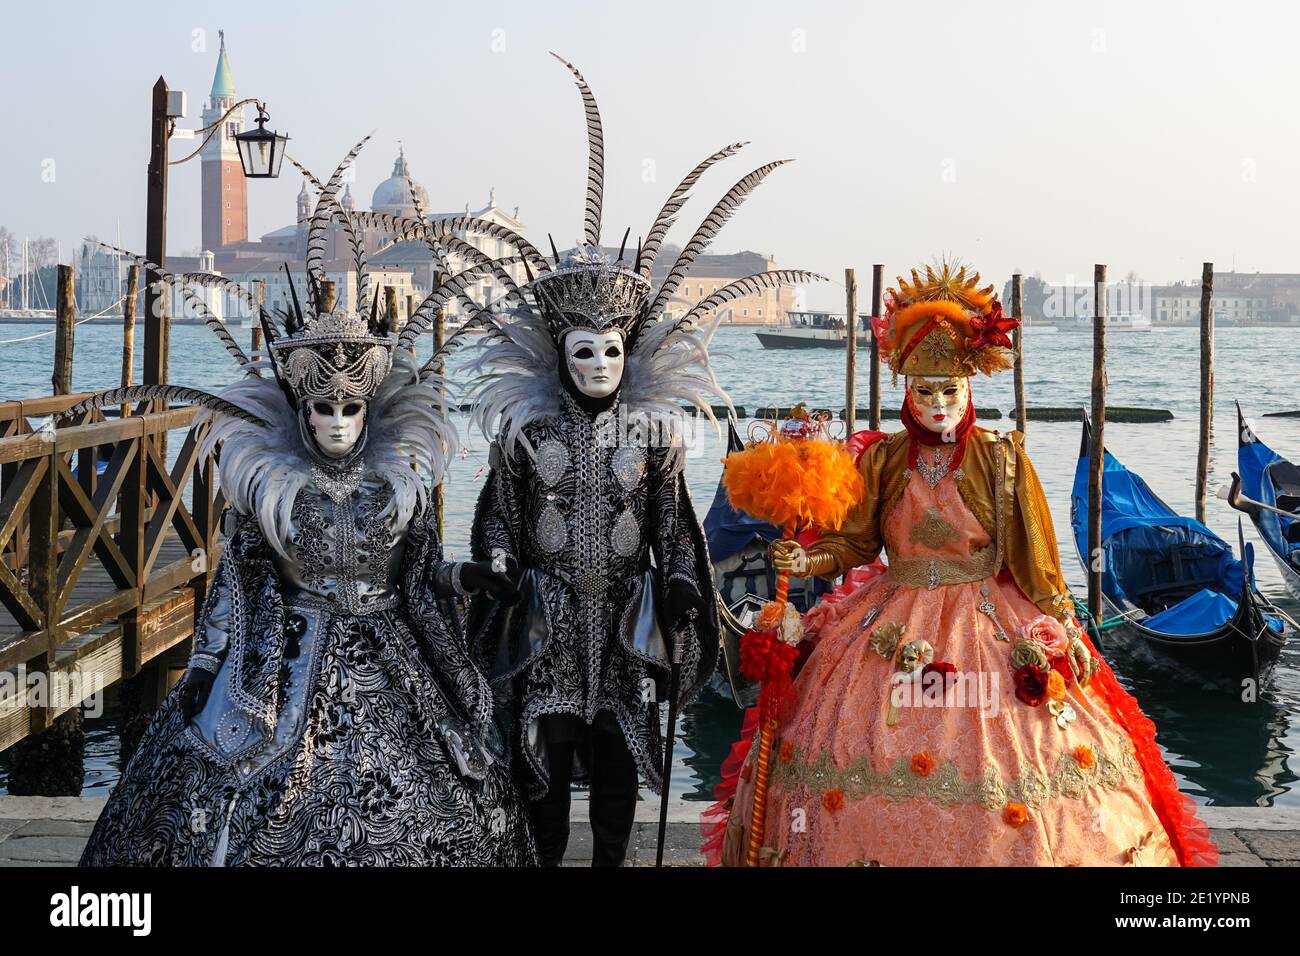 Personnes vêtues de costumes traditionnels décorés et de masques peints pendant le Carnaval de Venise à Venise, Italie Banque D'Images